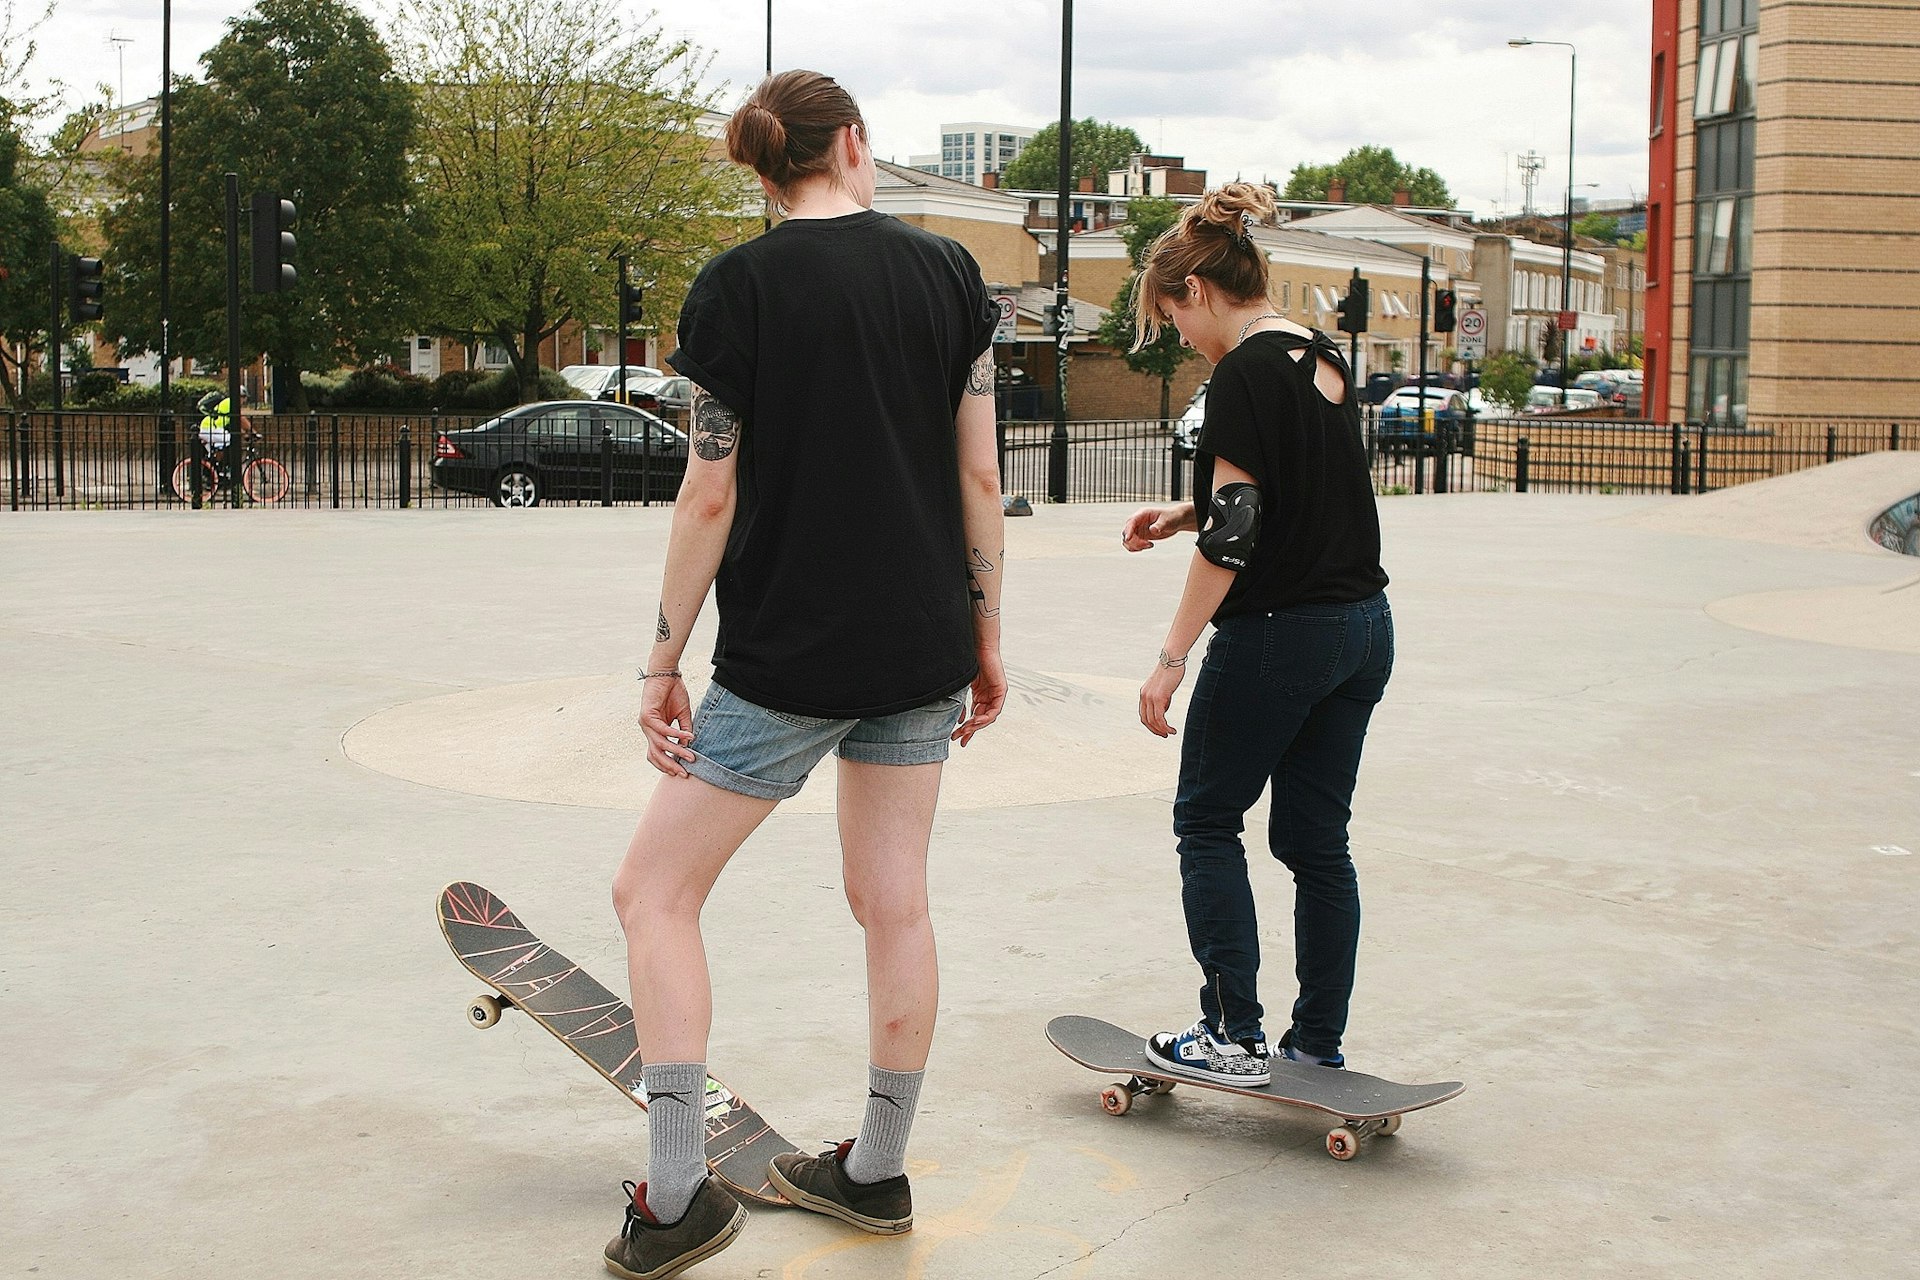 Boardettes skate school at Mile End skate park, London.